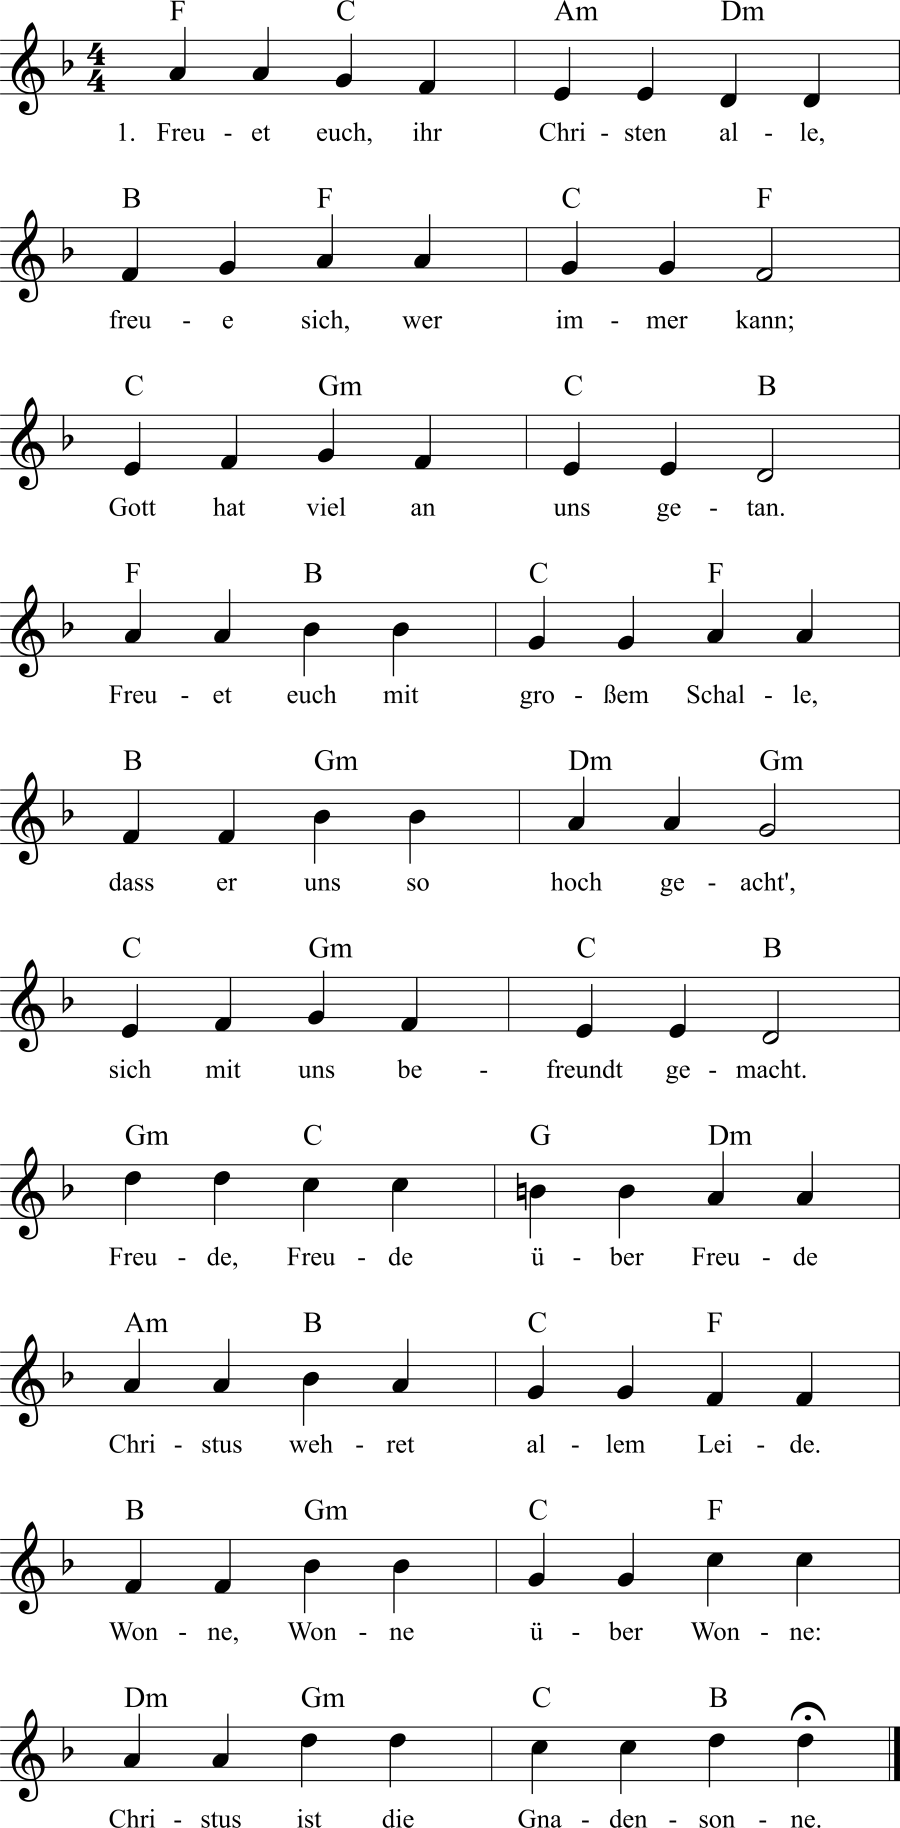 Musiknoten zum Lied - Freuet euch, ihr Christen alle